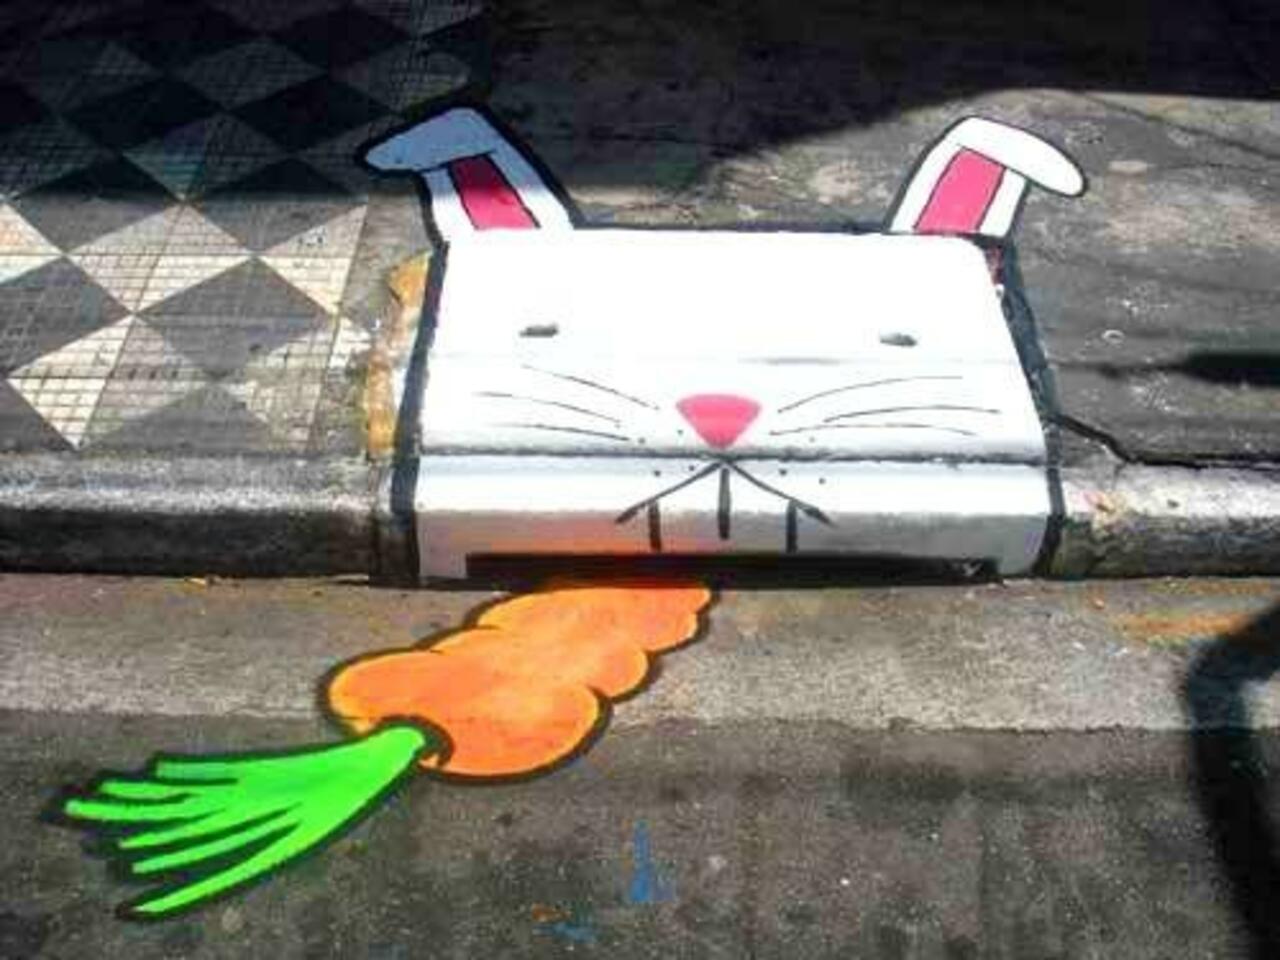 Bunny graffiti

#streetart #art #graffiti #urbanart http://t.co/Sp9DqjcidB